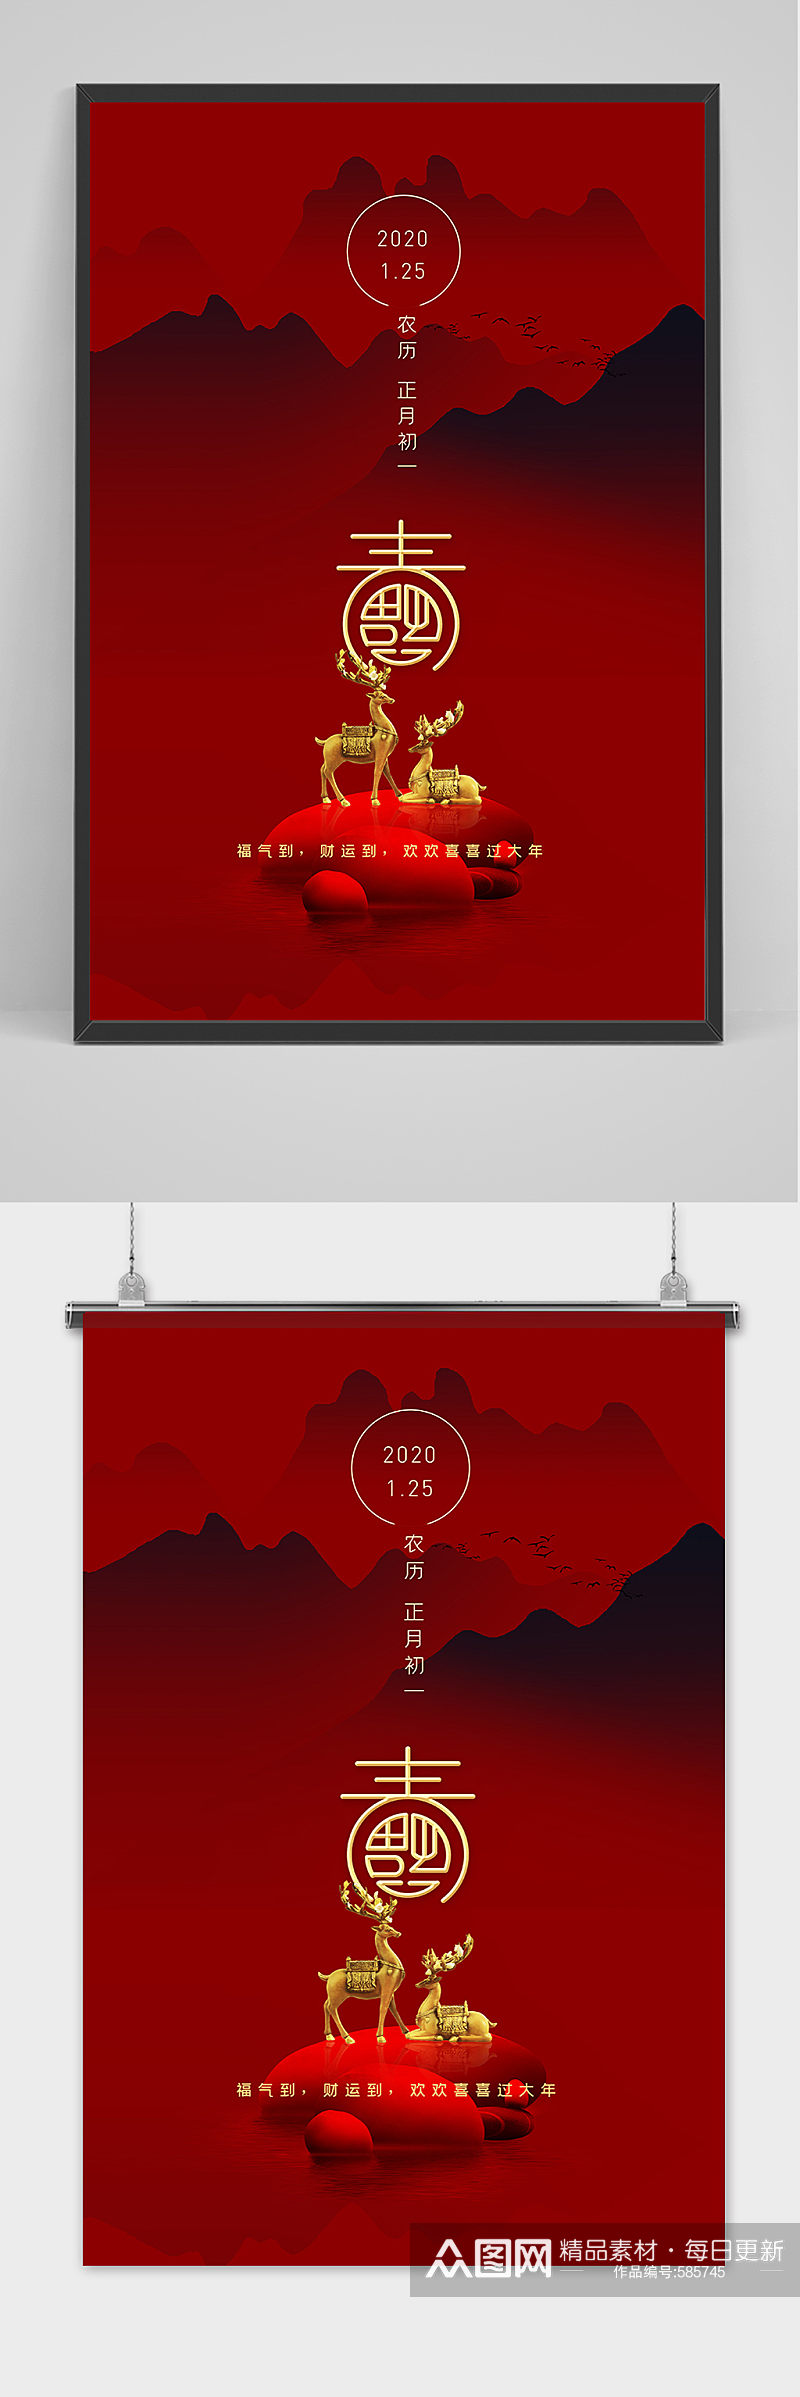 大气时尚中国风春节过大年海报素材